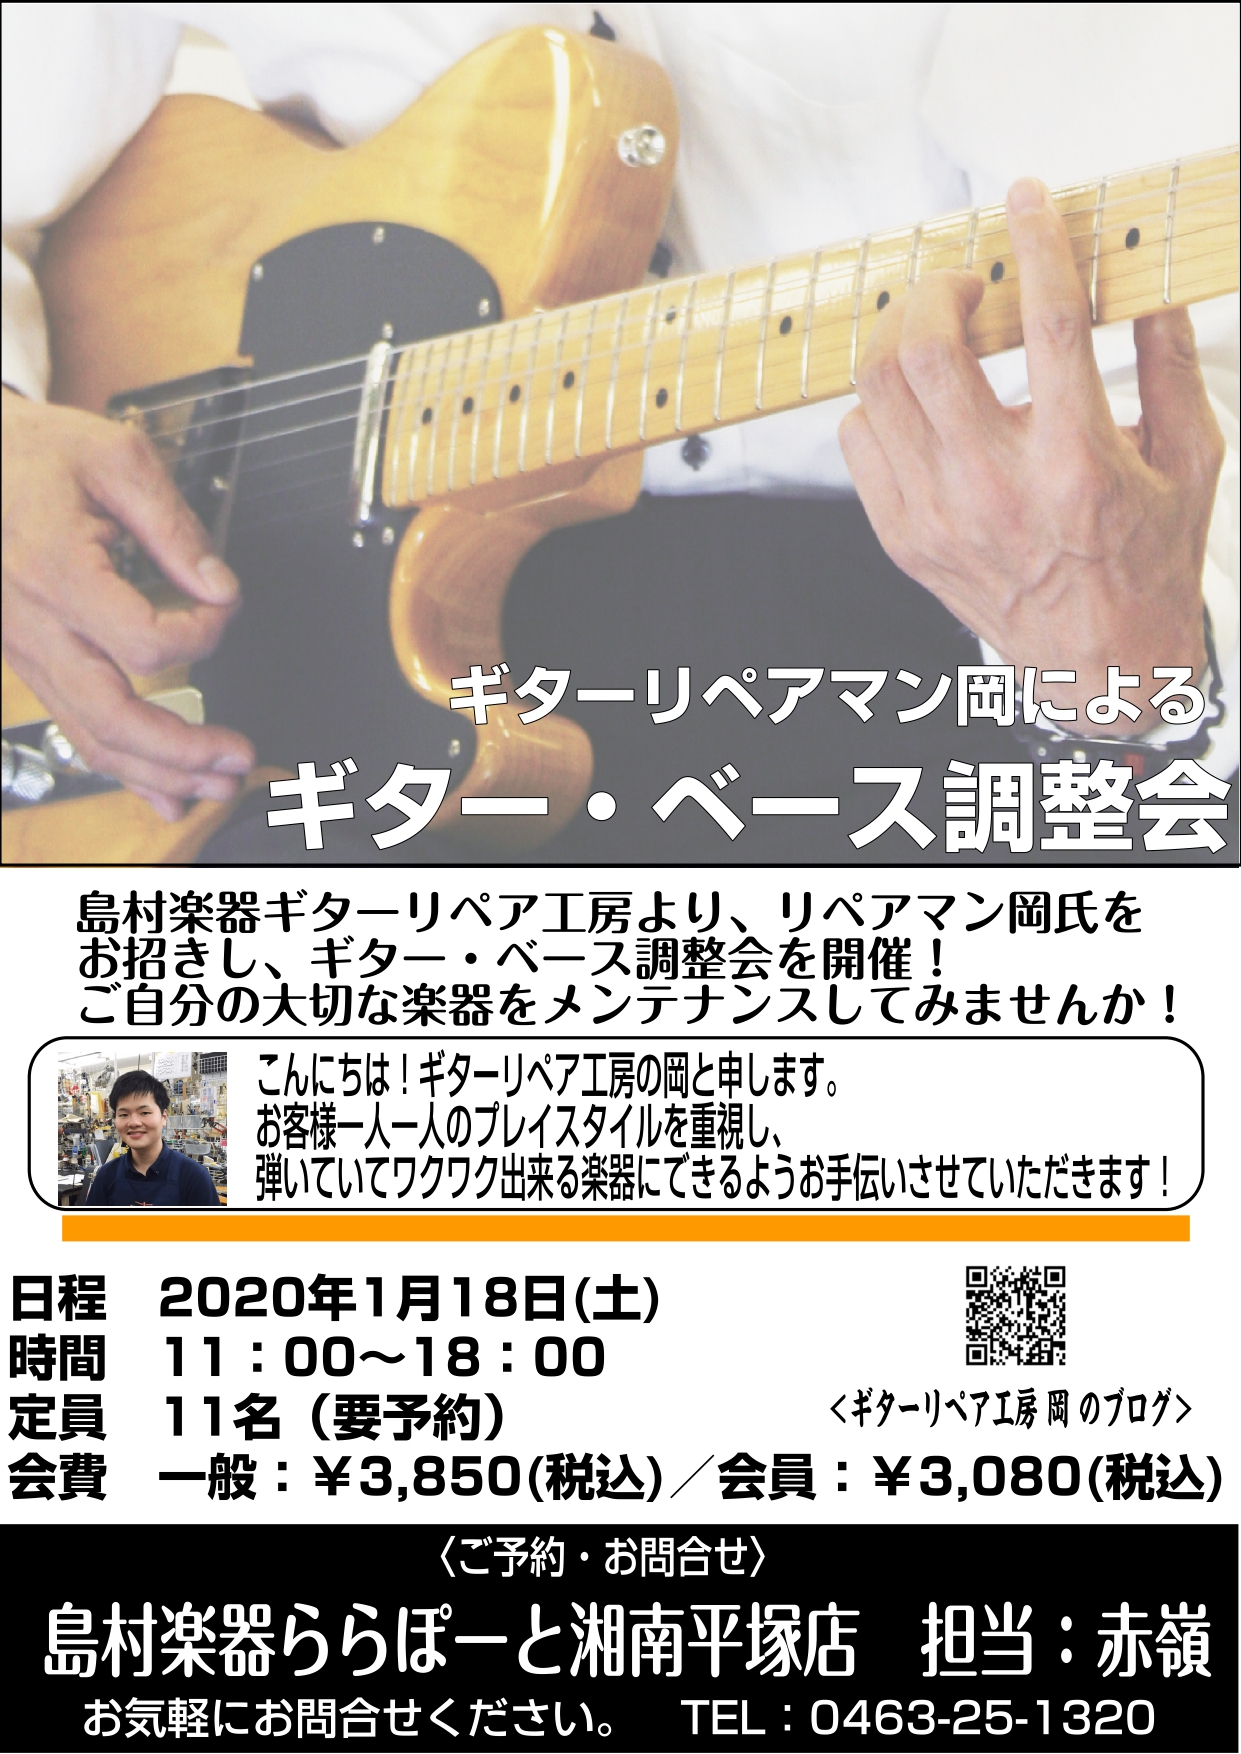 ギター・ベース調整会 開催!!2020年1月18日 (土)